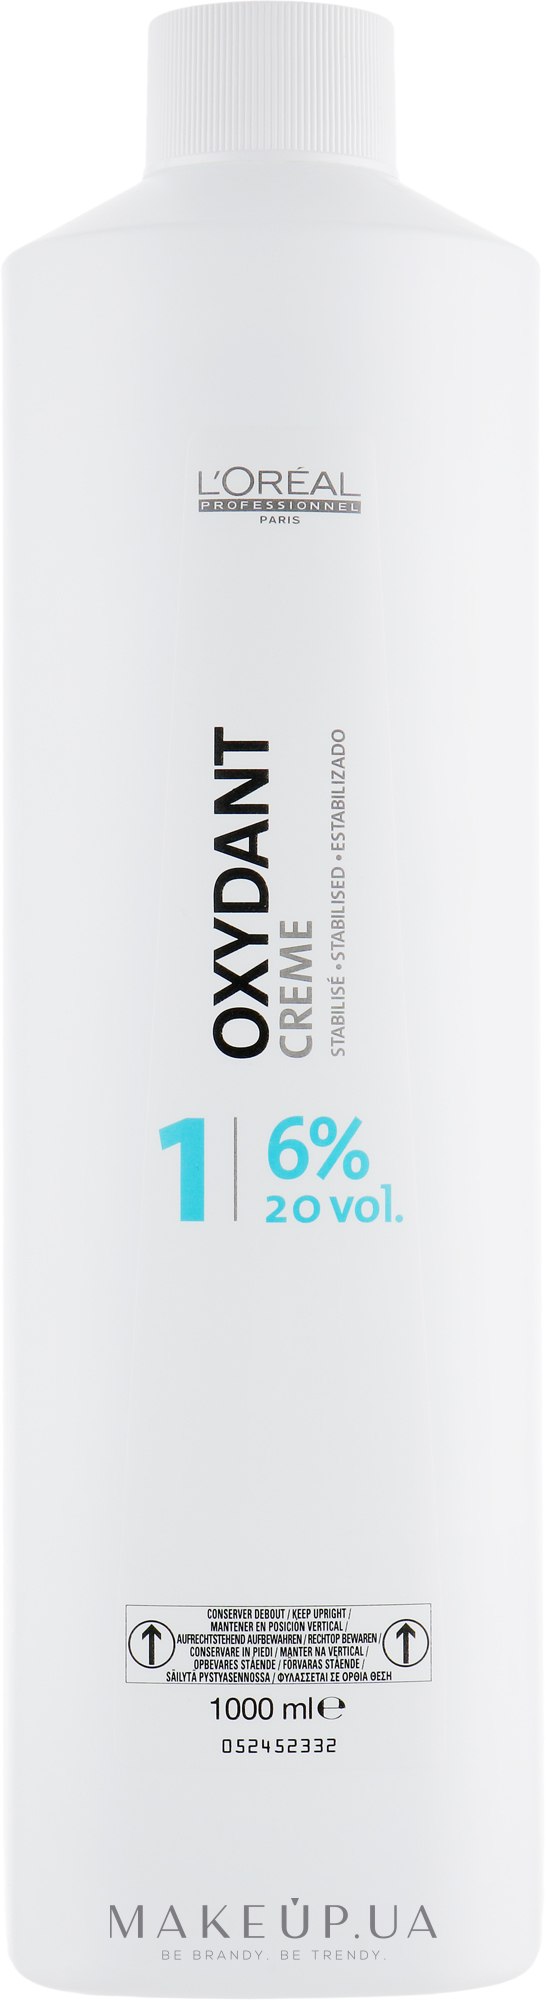 Косметичний крем-пероксид - L'Oreal Professionnel Oxydant 1 (6%) — фото 1000ml